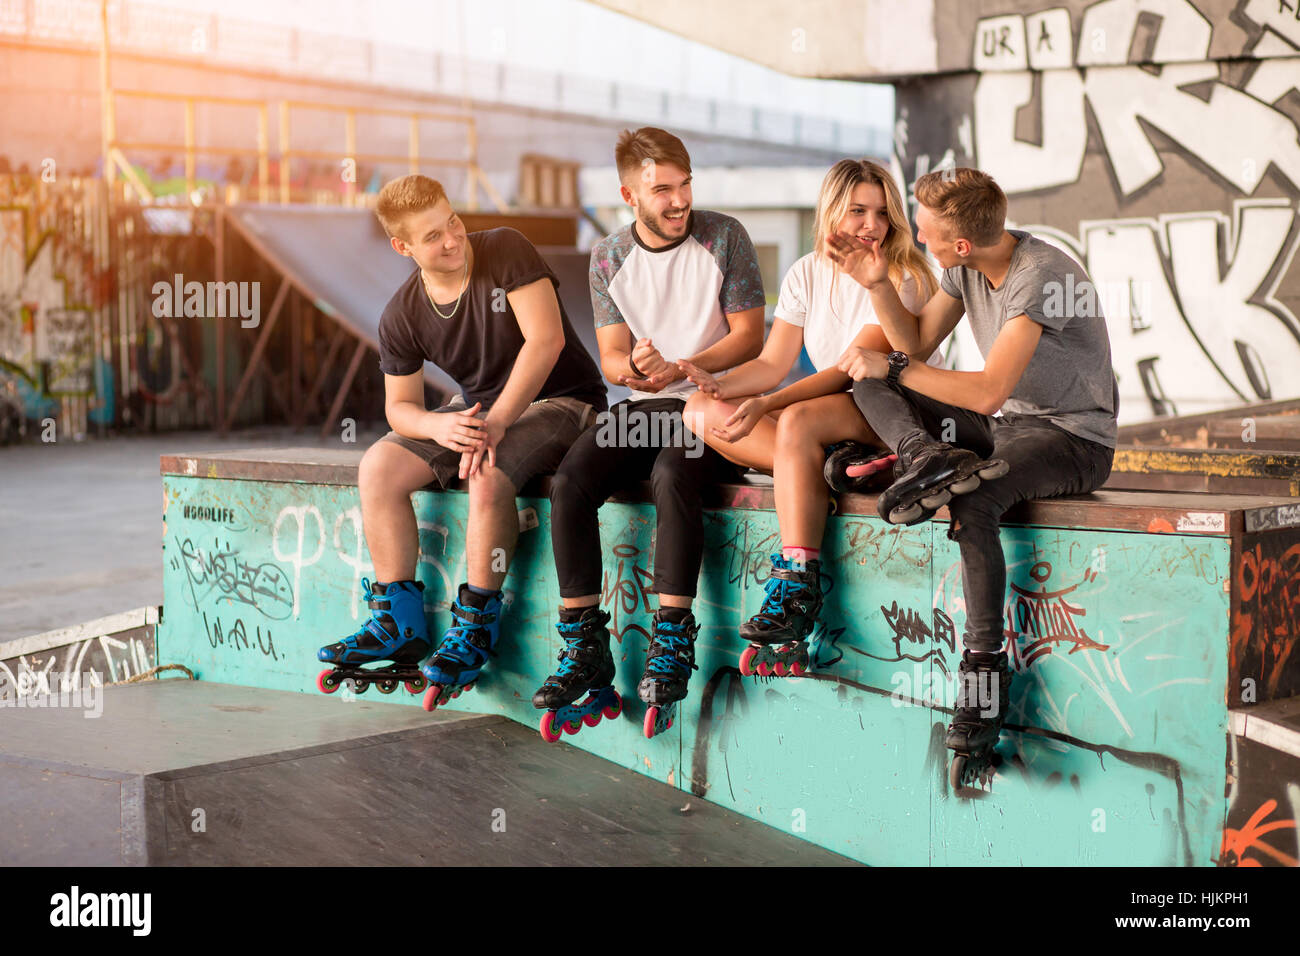 Junge Menschen auf Rollerblades sitzen. Stockfoto